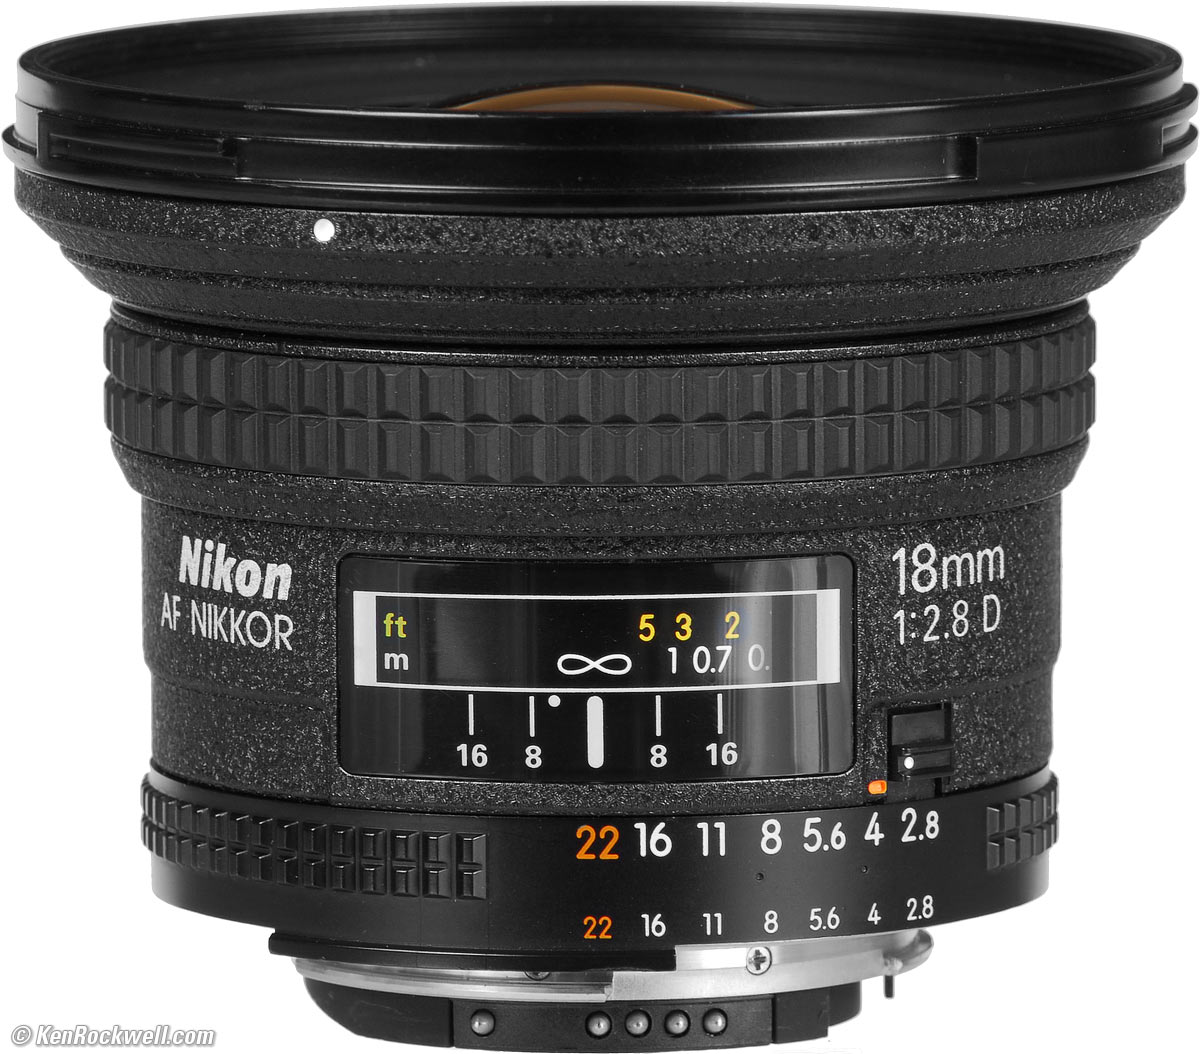 Nikon AF 18mm f/2.8 Review & Sample Images by Ken Rockwell